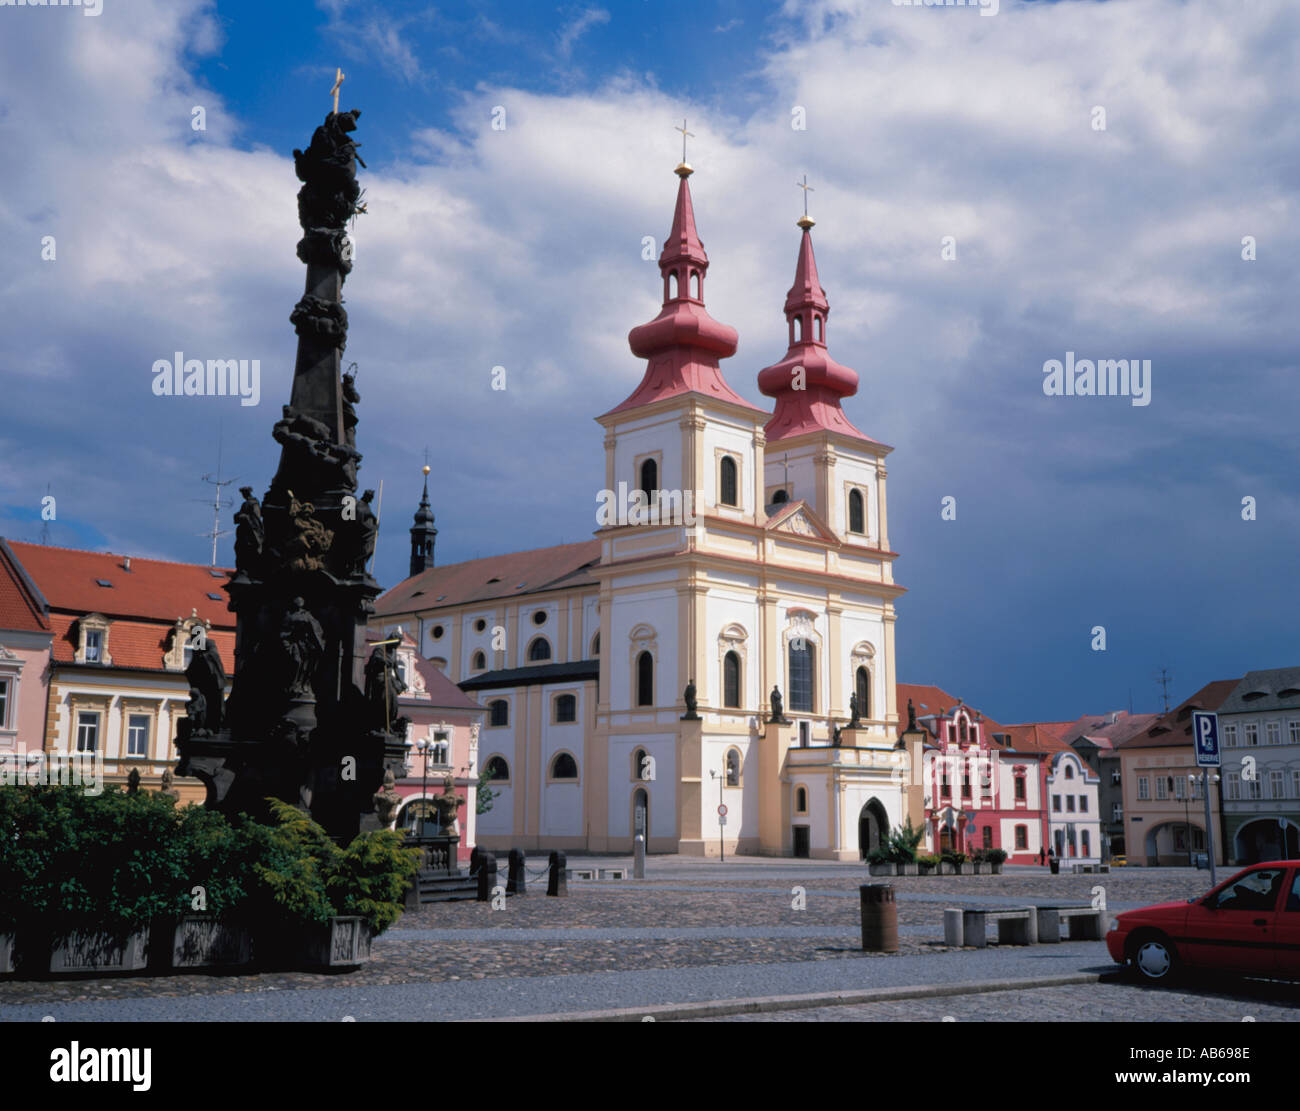 Colonna della Peste e colorata chiesa vista sulla pittoresca piazza principale, Kadan, nel nord della Repubblica ceca. Foto Stock